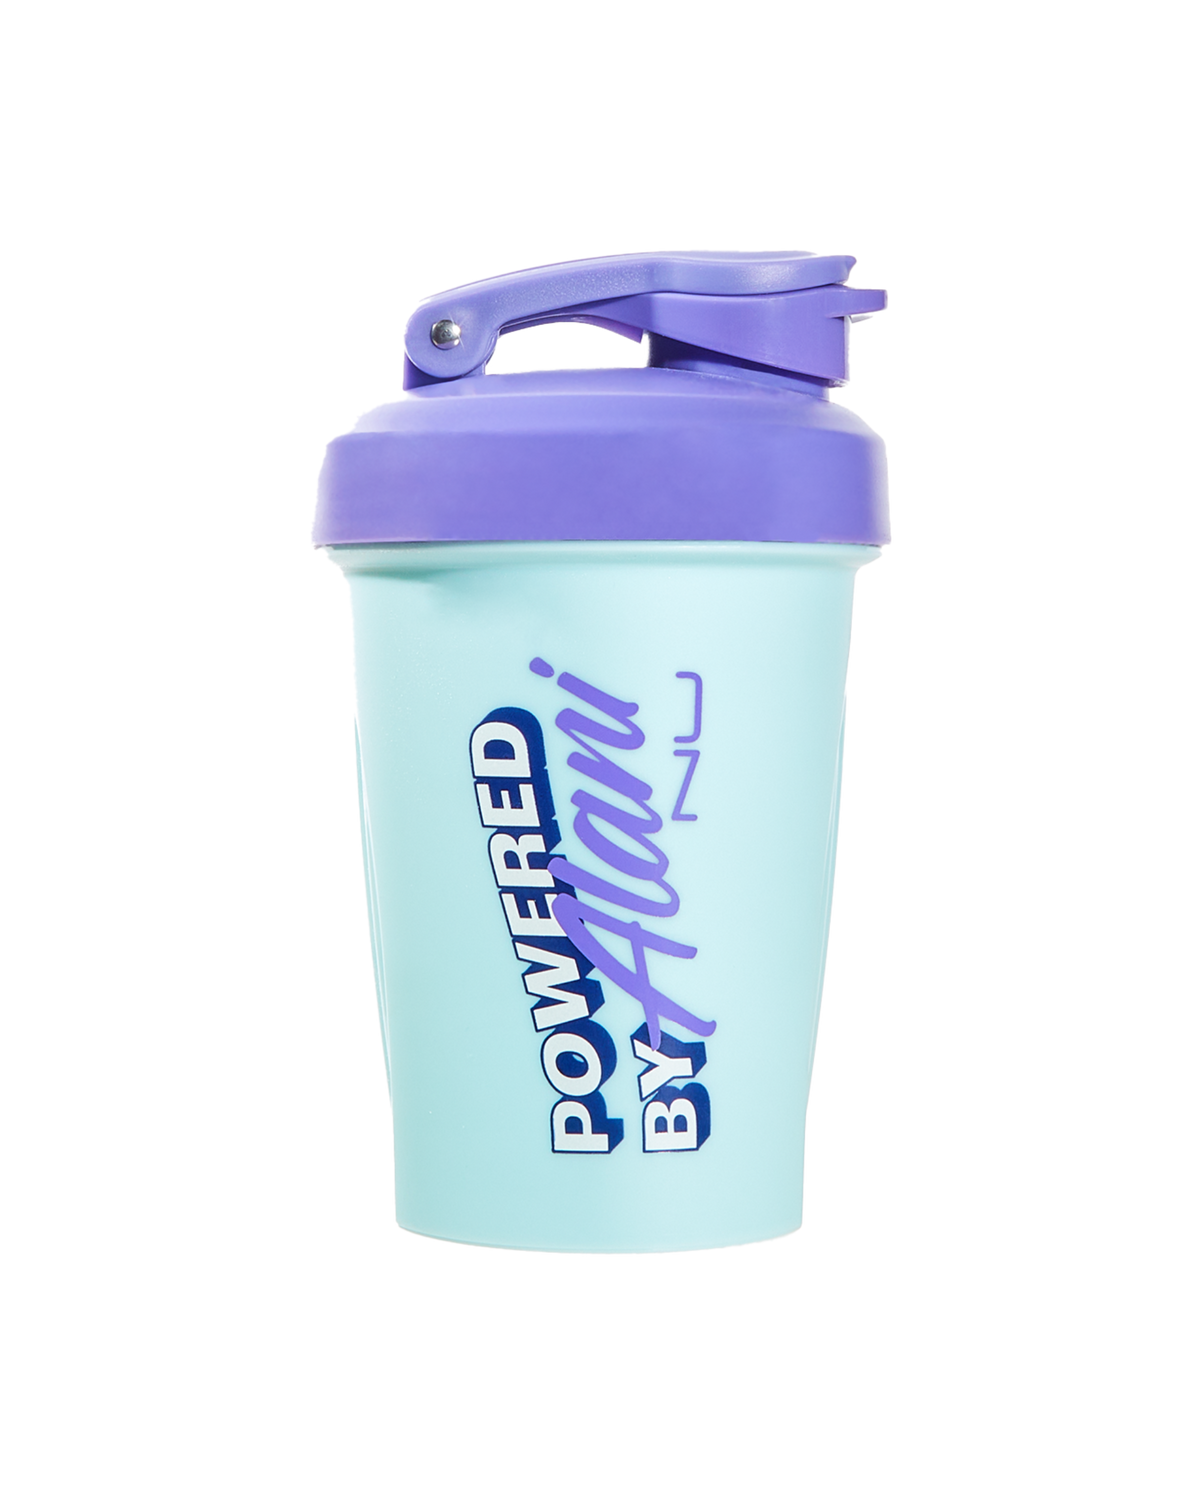 An Alani Nu 12oz Shaker - Blue Sky with a purple lid.